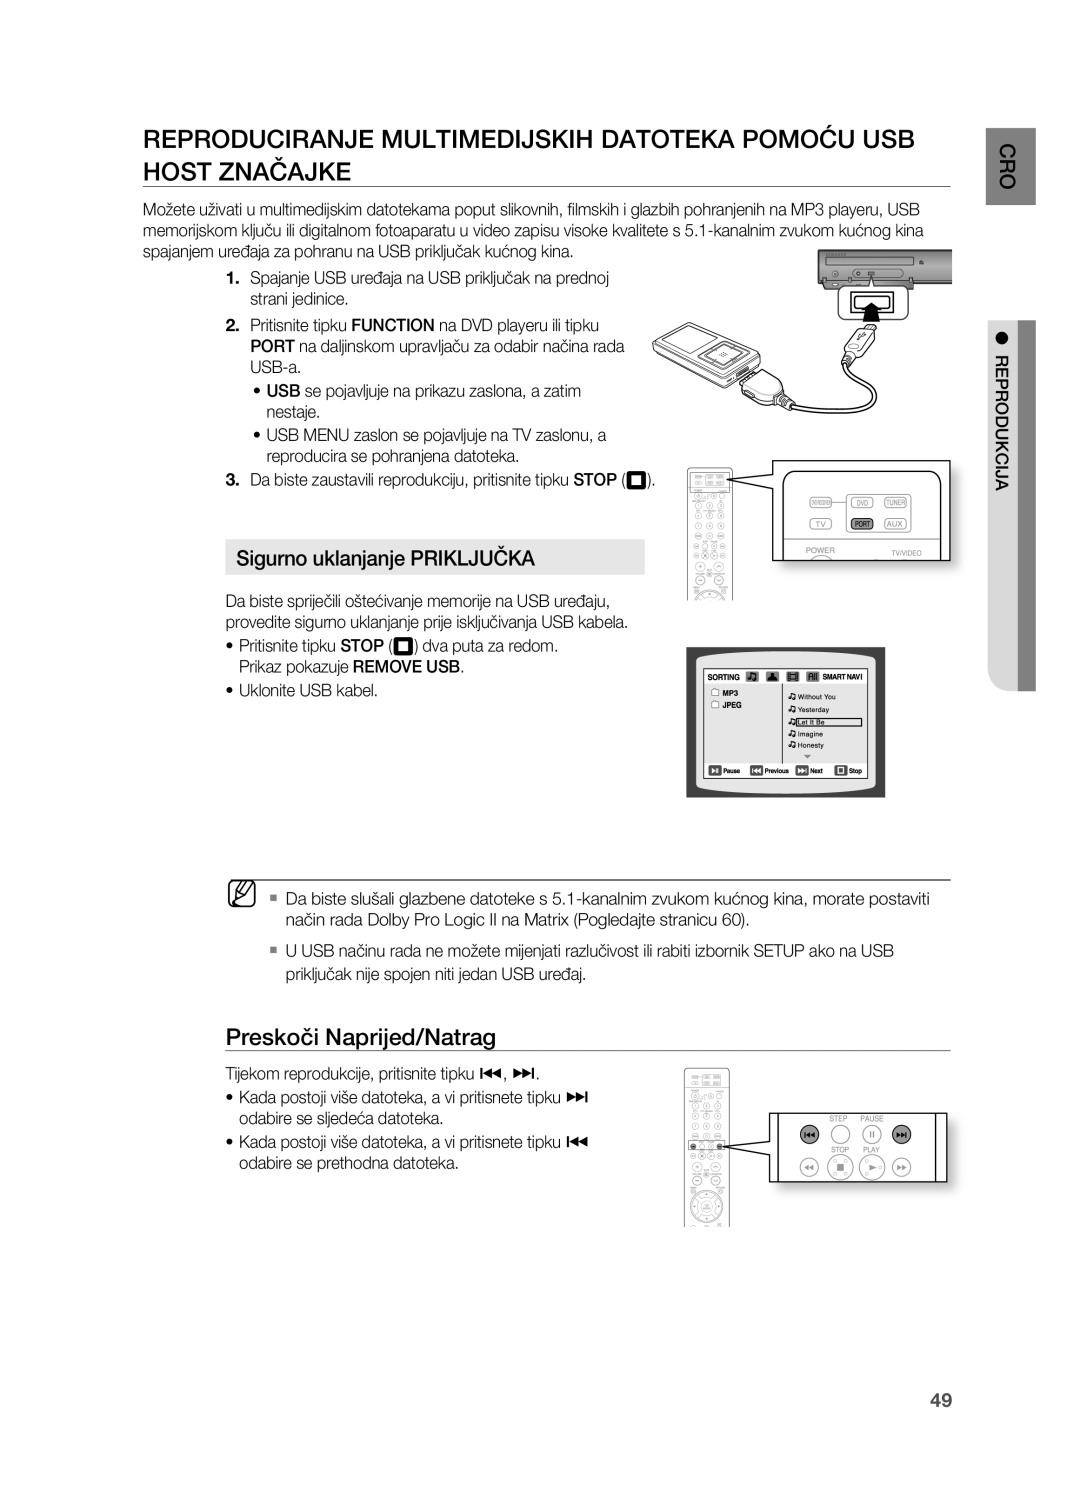 Samsung HT-TZ212R/EDC manual REPRoDUCIRANjE MULTIMEDIjSkIH DAToTEkA PoMoćU USB HoST ZNAčAjkE, Sigurno uklanjanje PRIkLjUčkA 